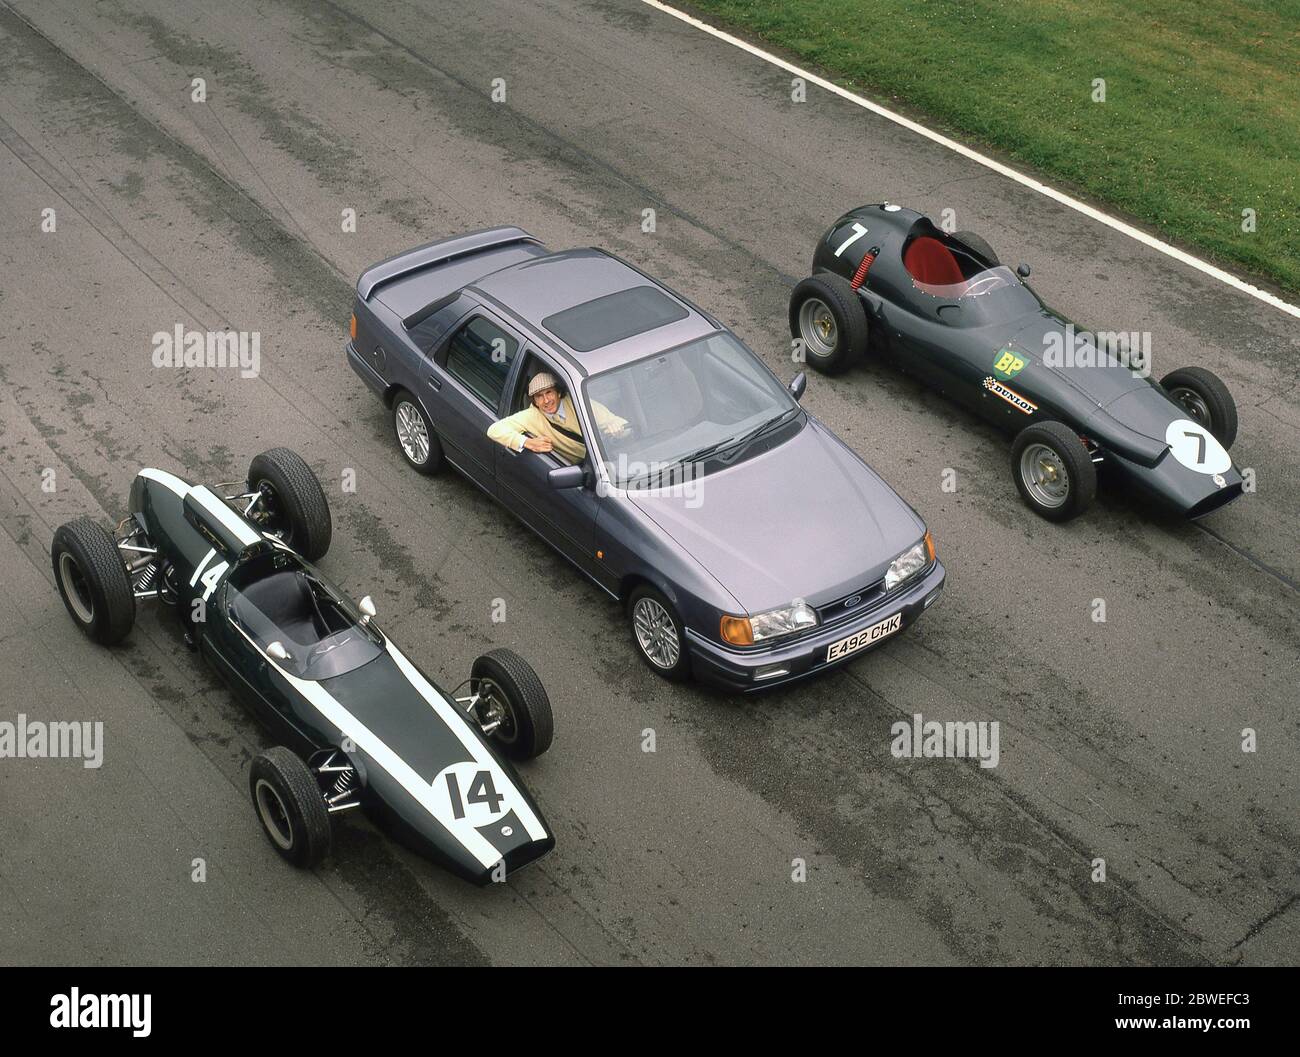 Jackie Stewart avec quelques-unes de ses voitures de course Grand Prix et une Ford Sierra Cosworth à Oulton Park 1988 Banque D'Images